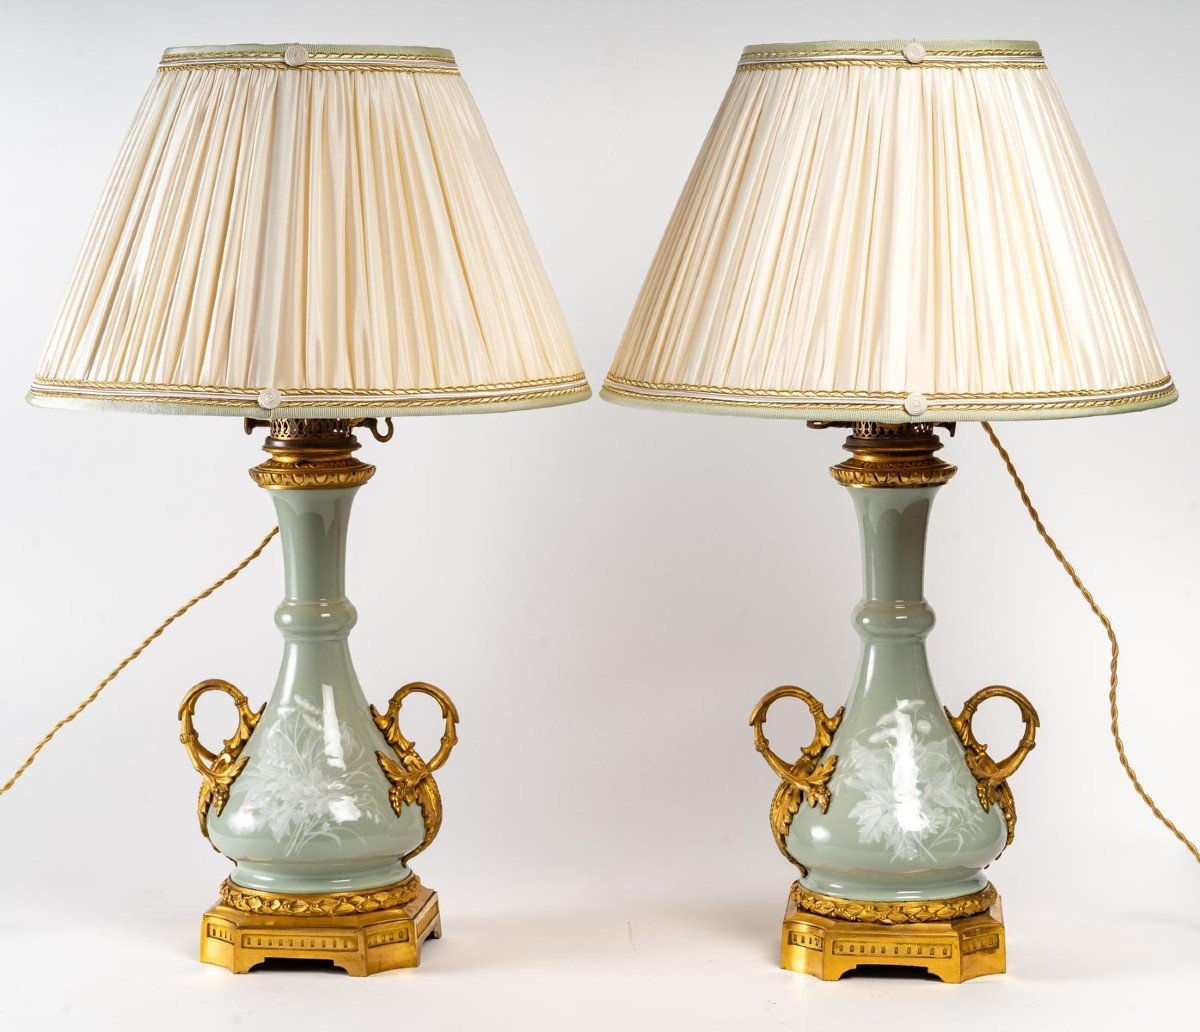 Paire de lampes Céladon  "Manufacture de Sèvres " 1850  signée Gagneau